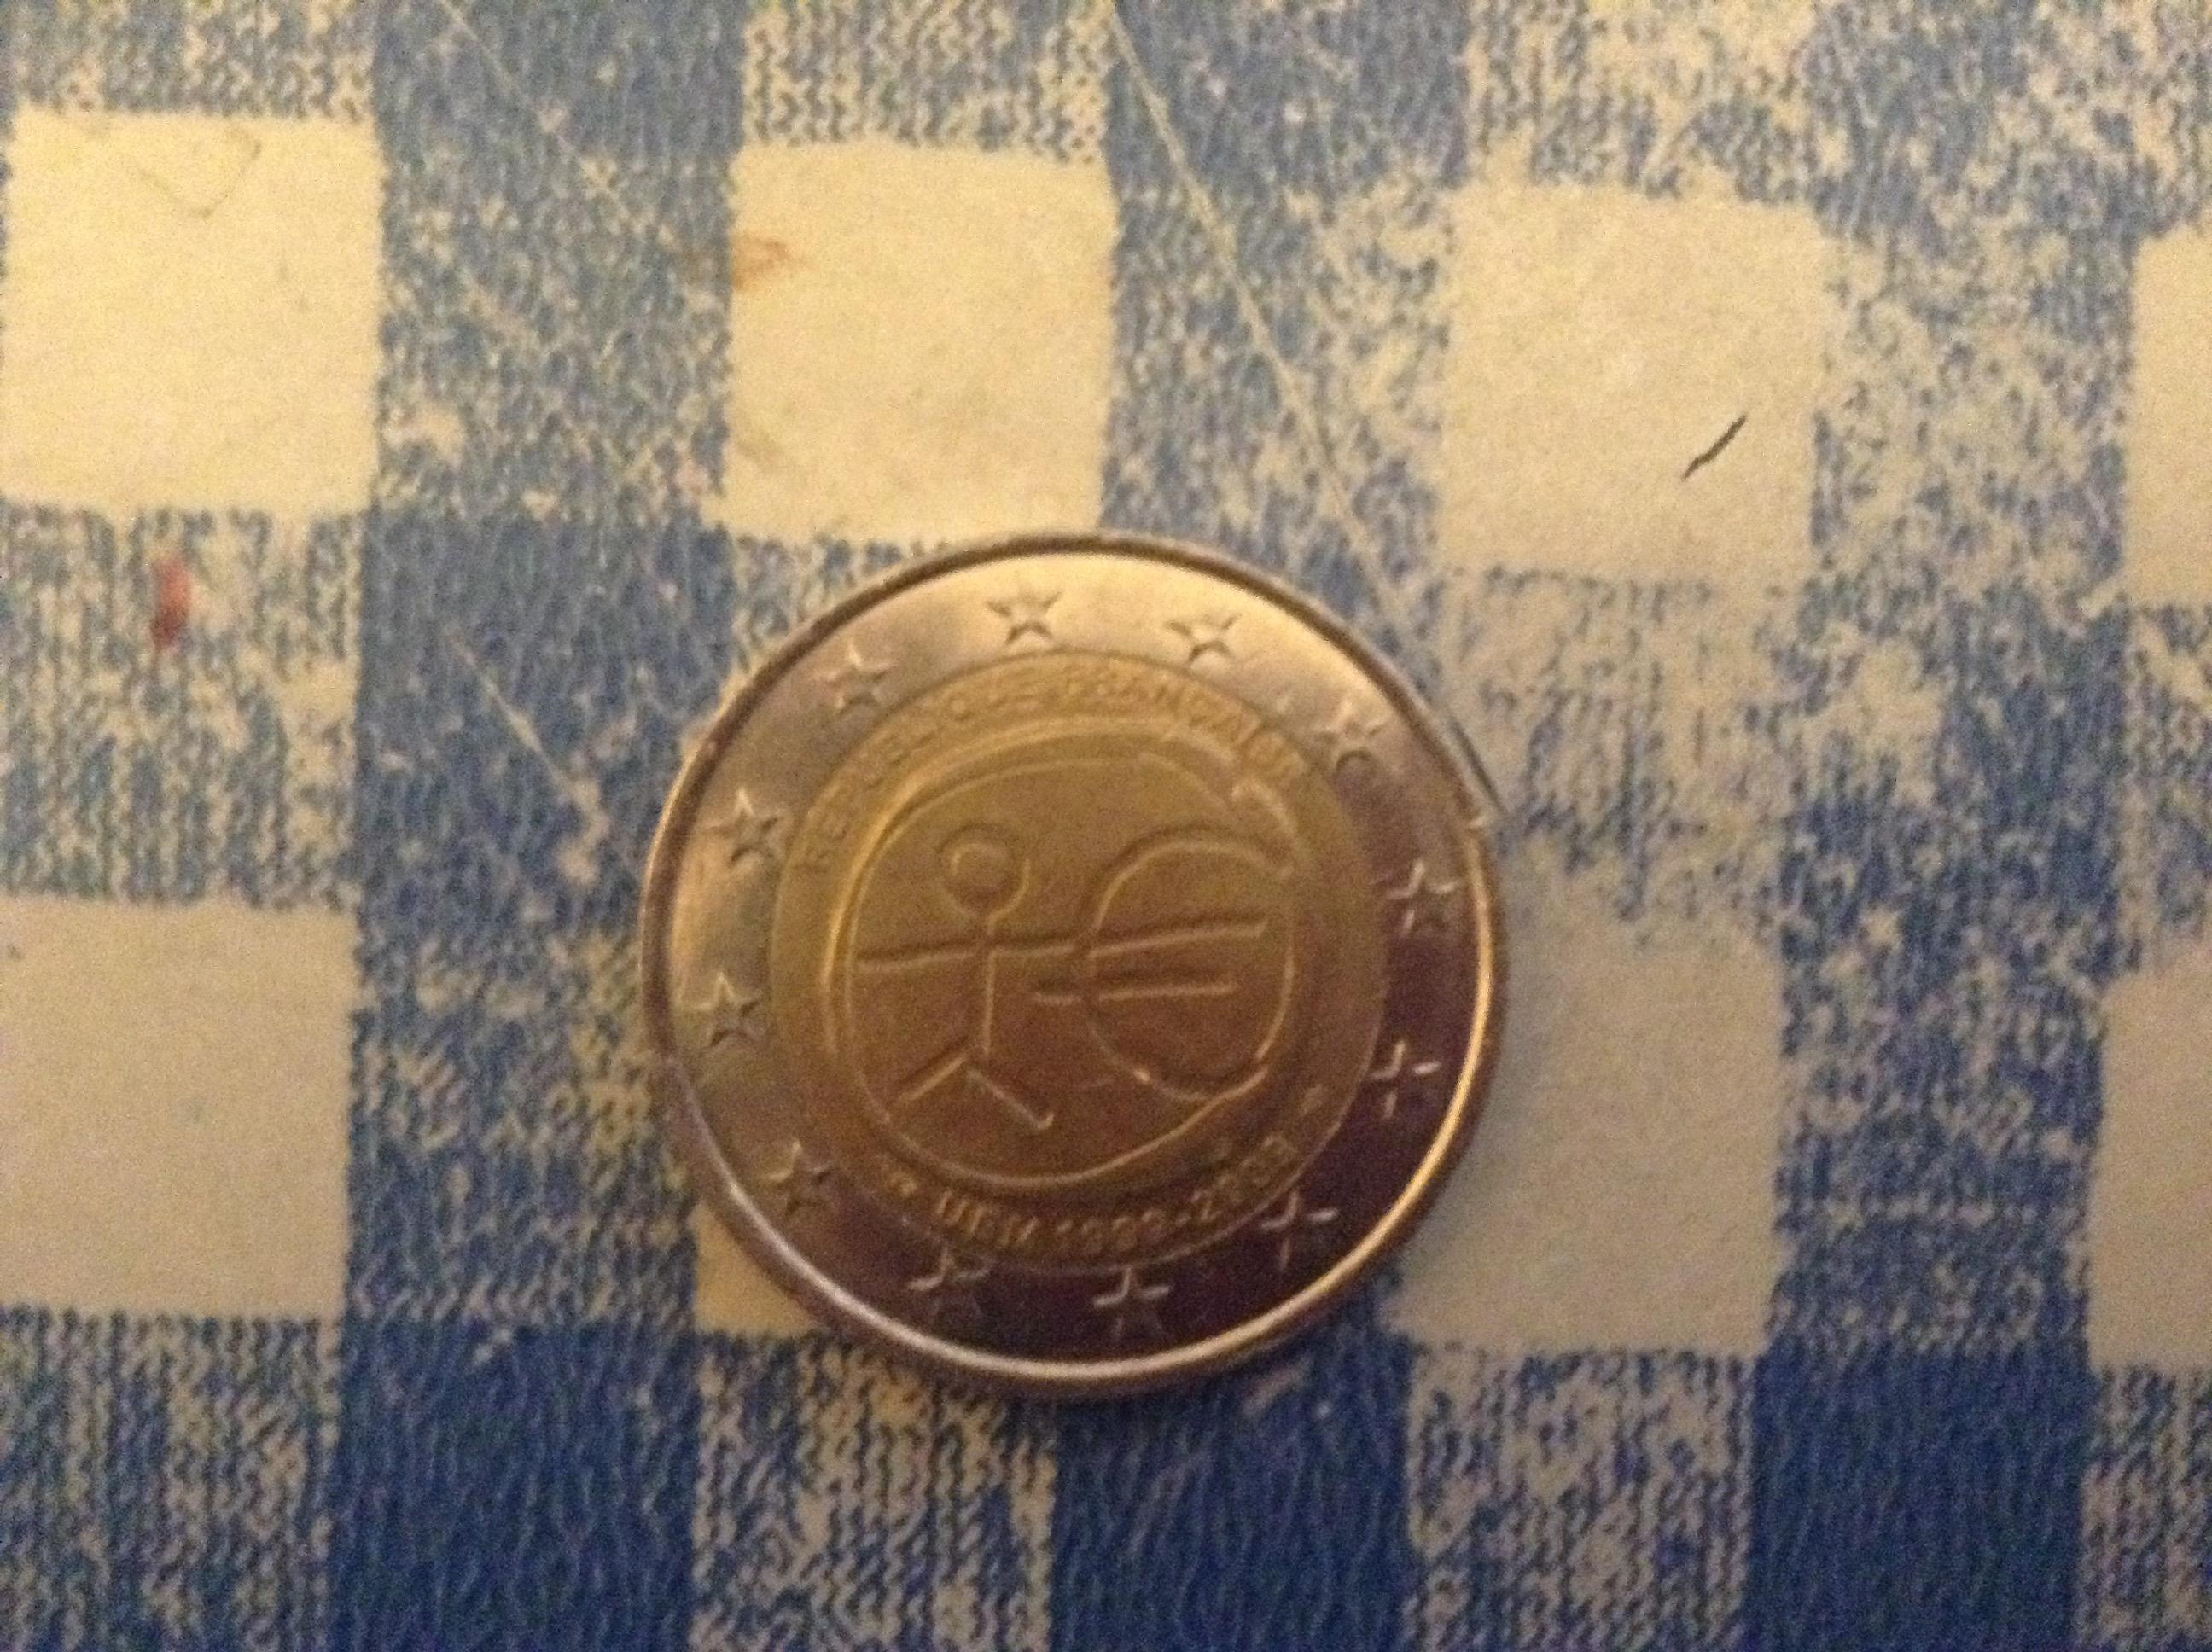 欧元 硬币 货币 - 免费矢量图形Pixabay - Pixabay